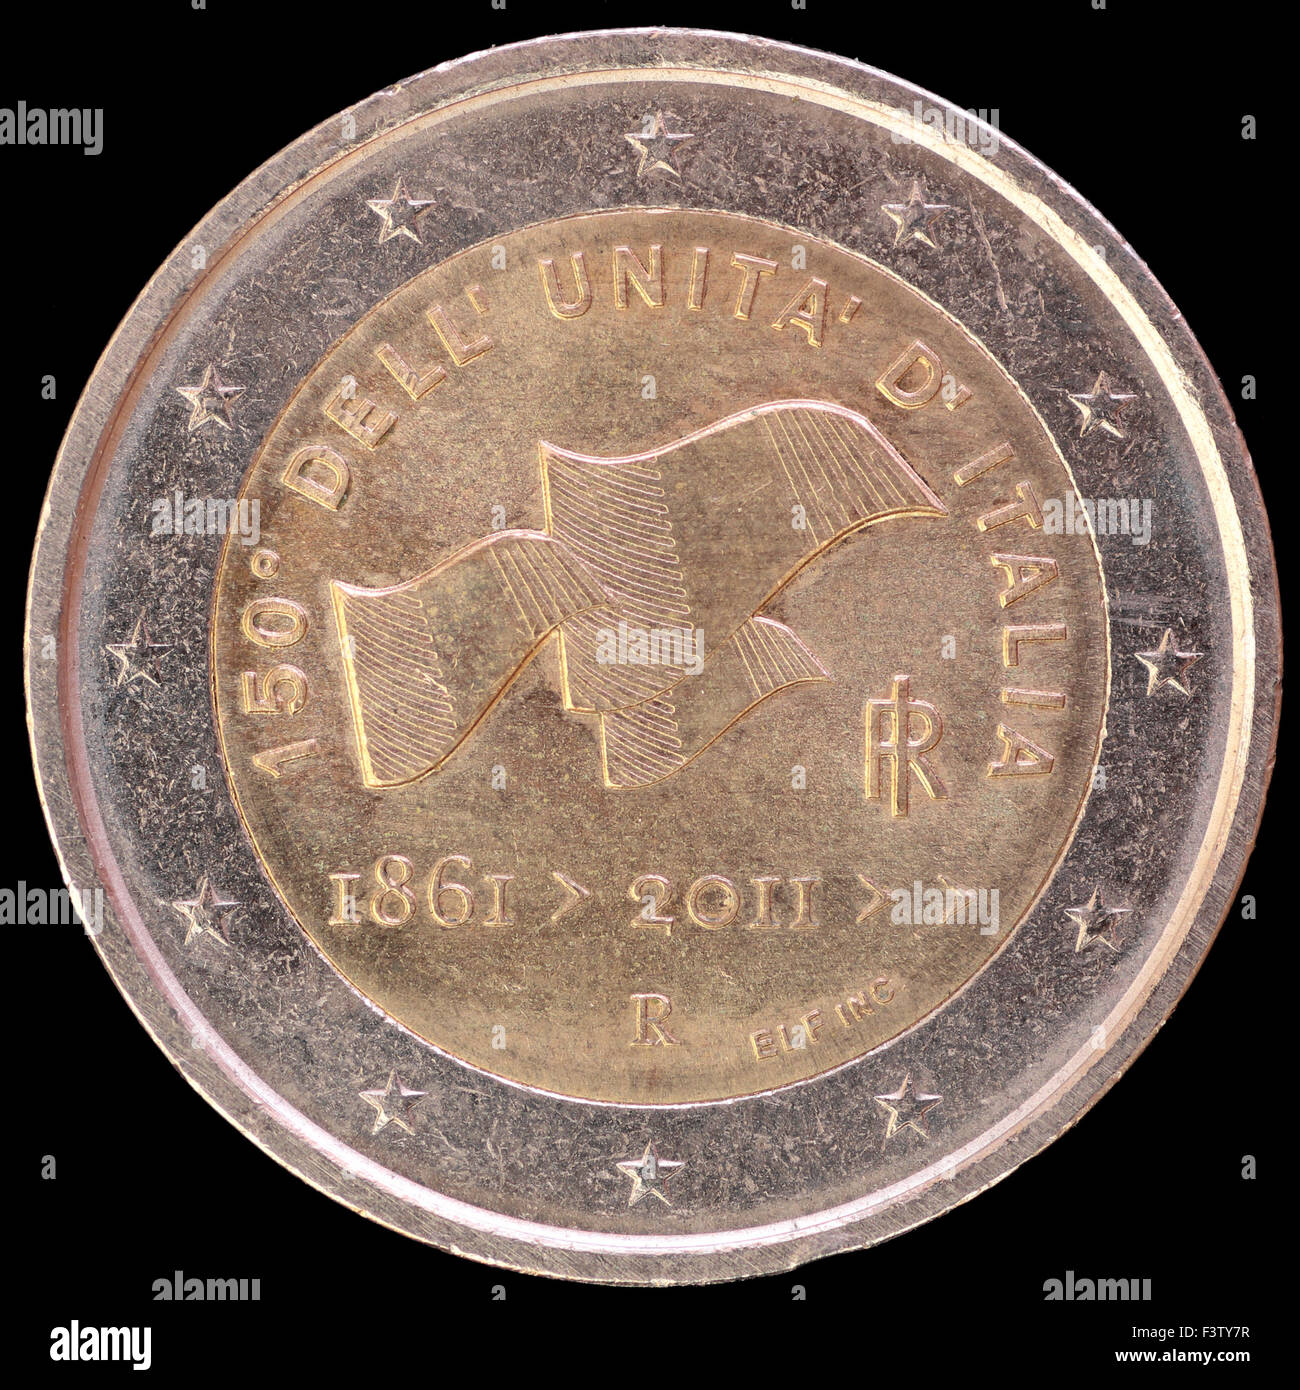 Un fatto circolare commemorativa due monete in euro emesse dall'Italia nel 2011 e mostra tre bandierine to celebrare l'unificazione italiana Foto Stock